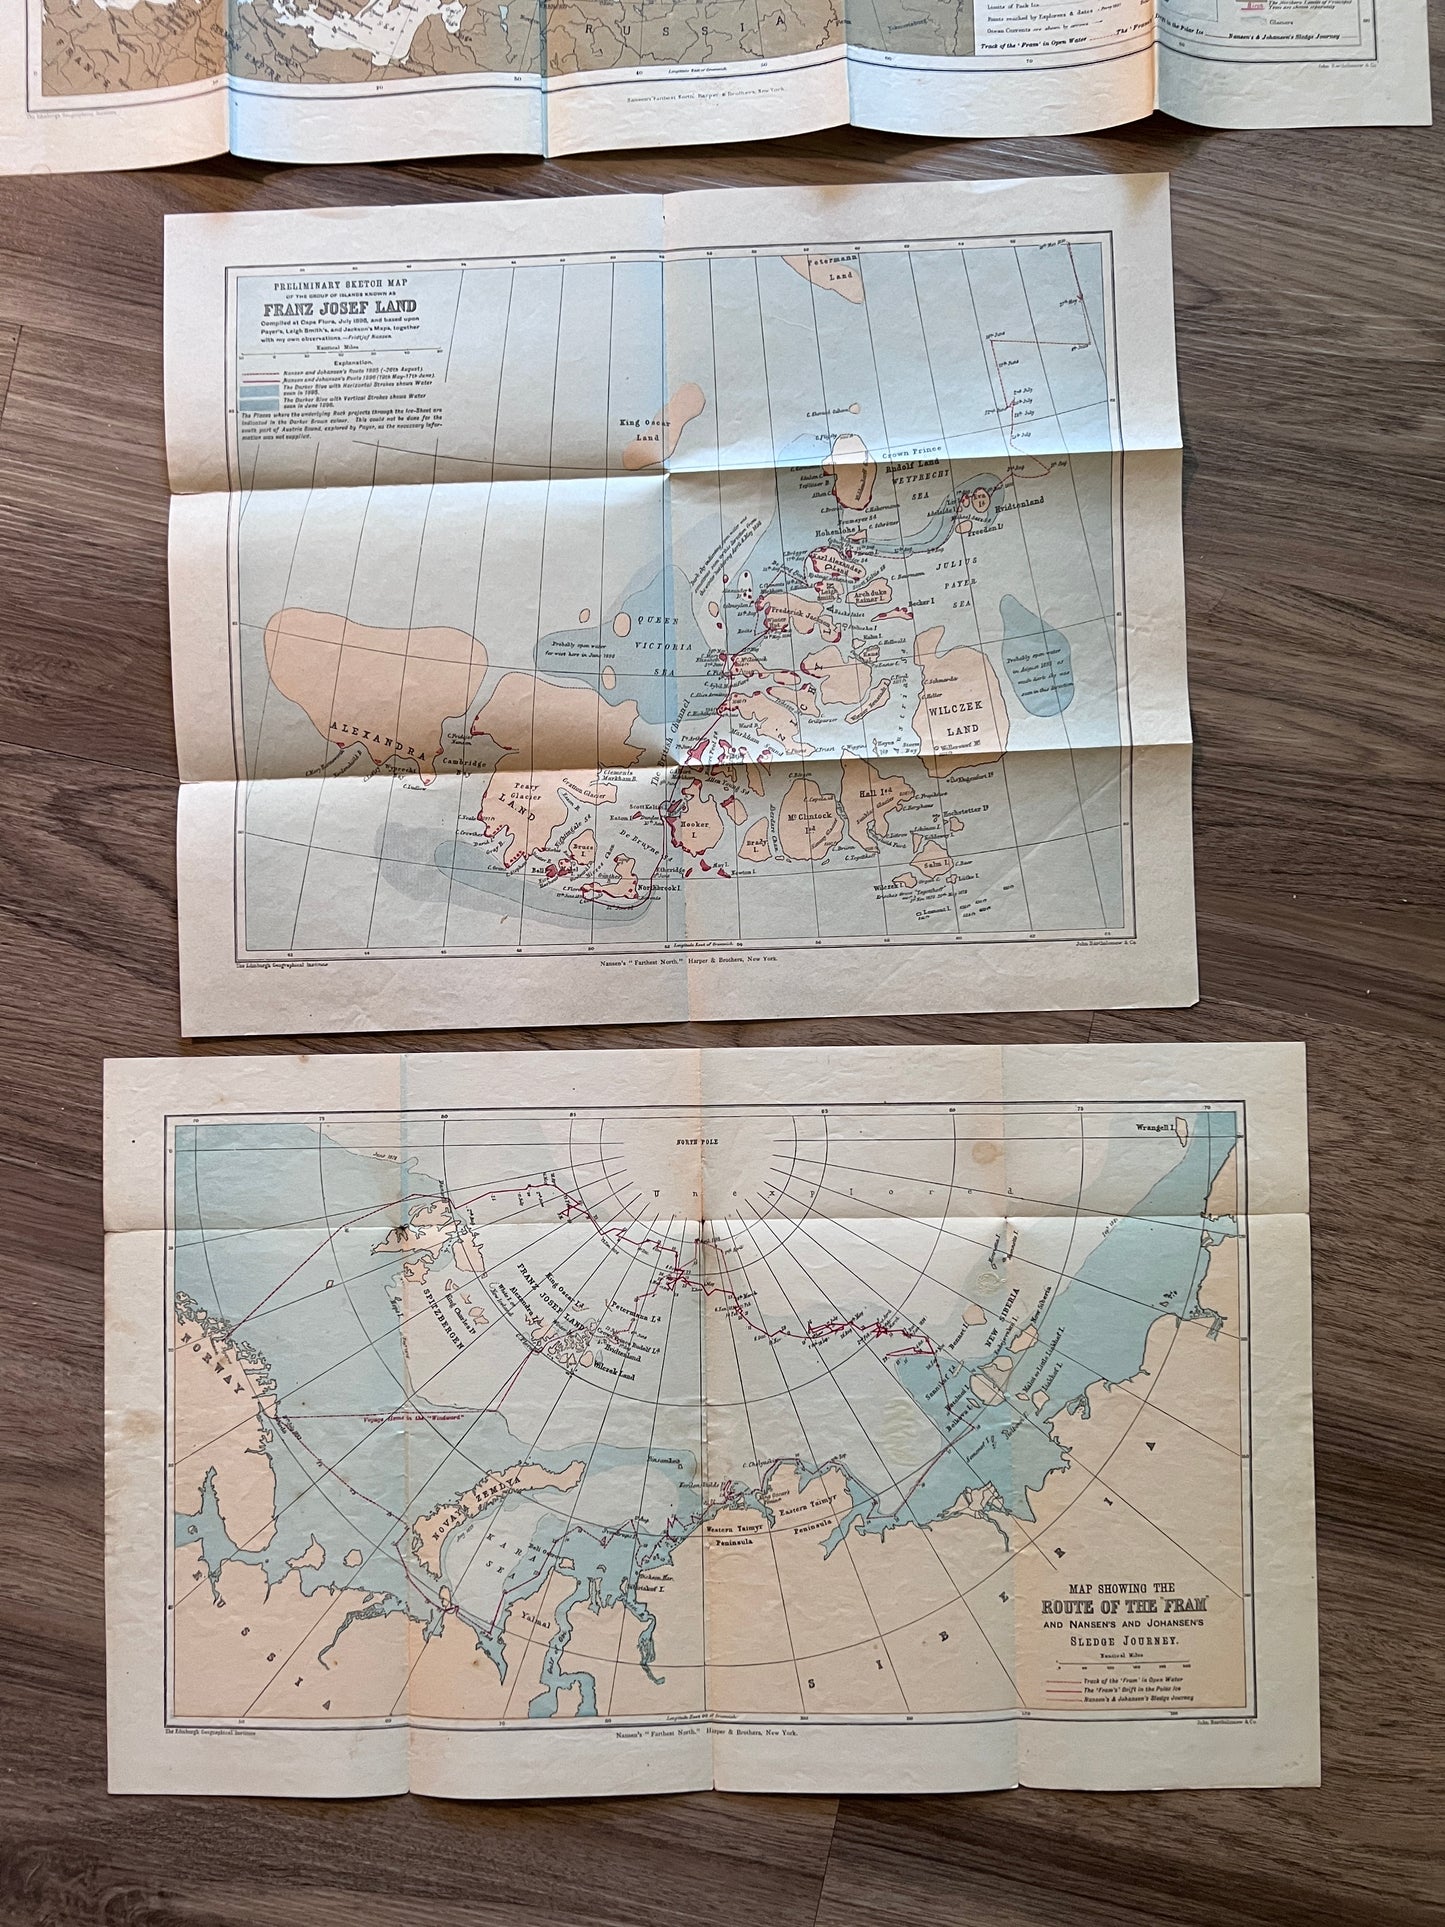 Farthest North (An Arctic Voyage) by Dr. Fridtjof Nansen - 2 Volumes 1897